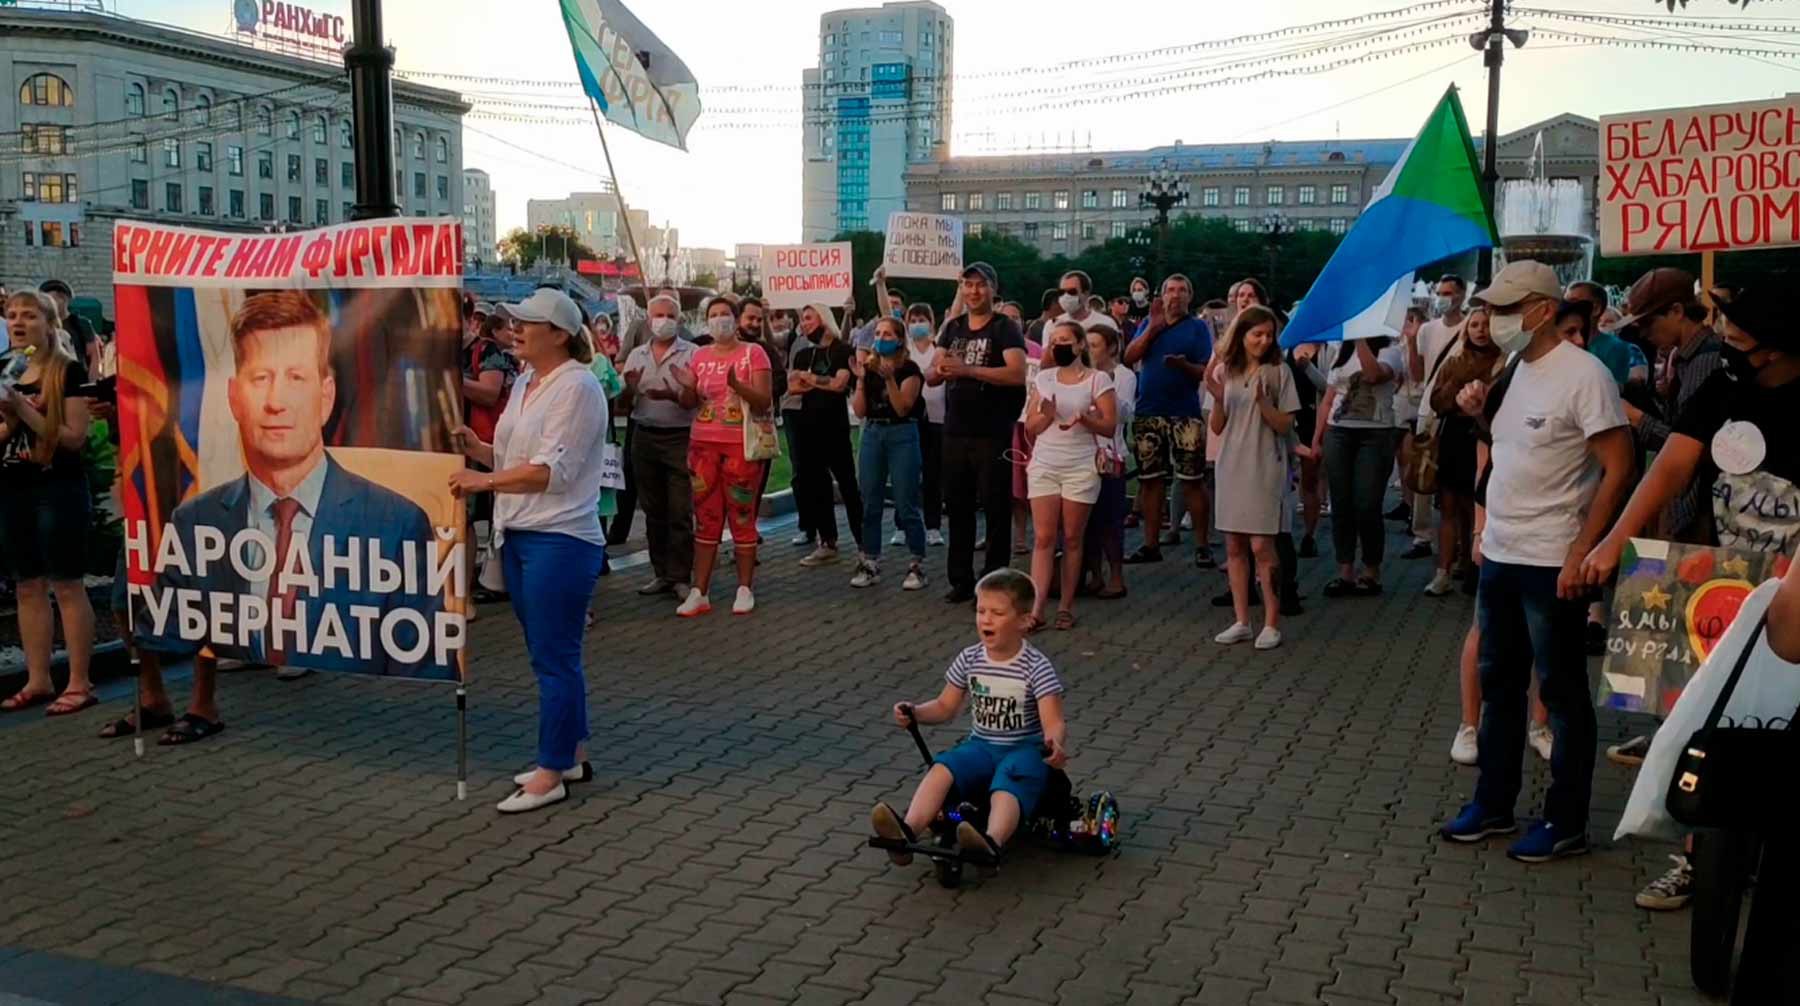 Dailystorm - В Хабаровске прошел четырнадцатый митинг в поддержку Фургала